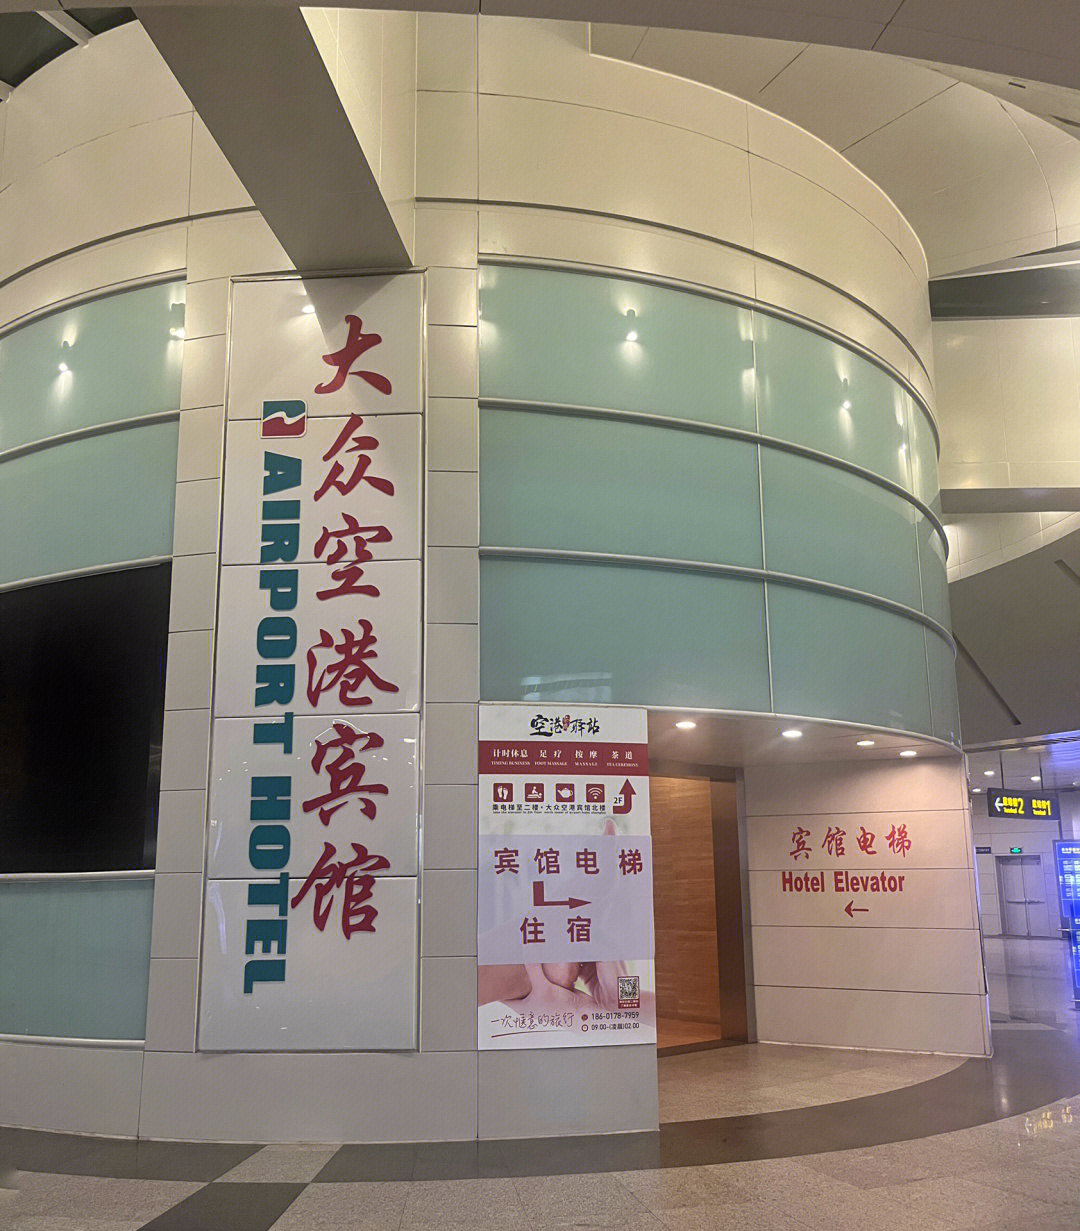 位于浦东机场t2航站楼(ego便利店对面一直走进去)对飞晚班机和早班机